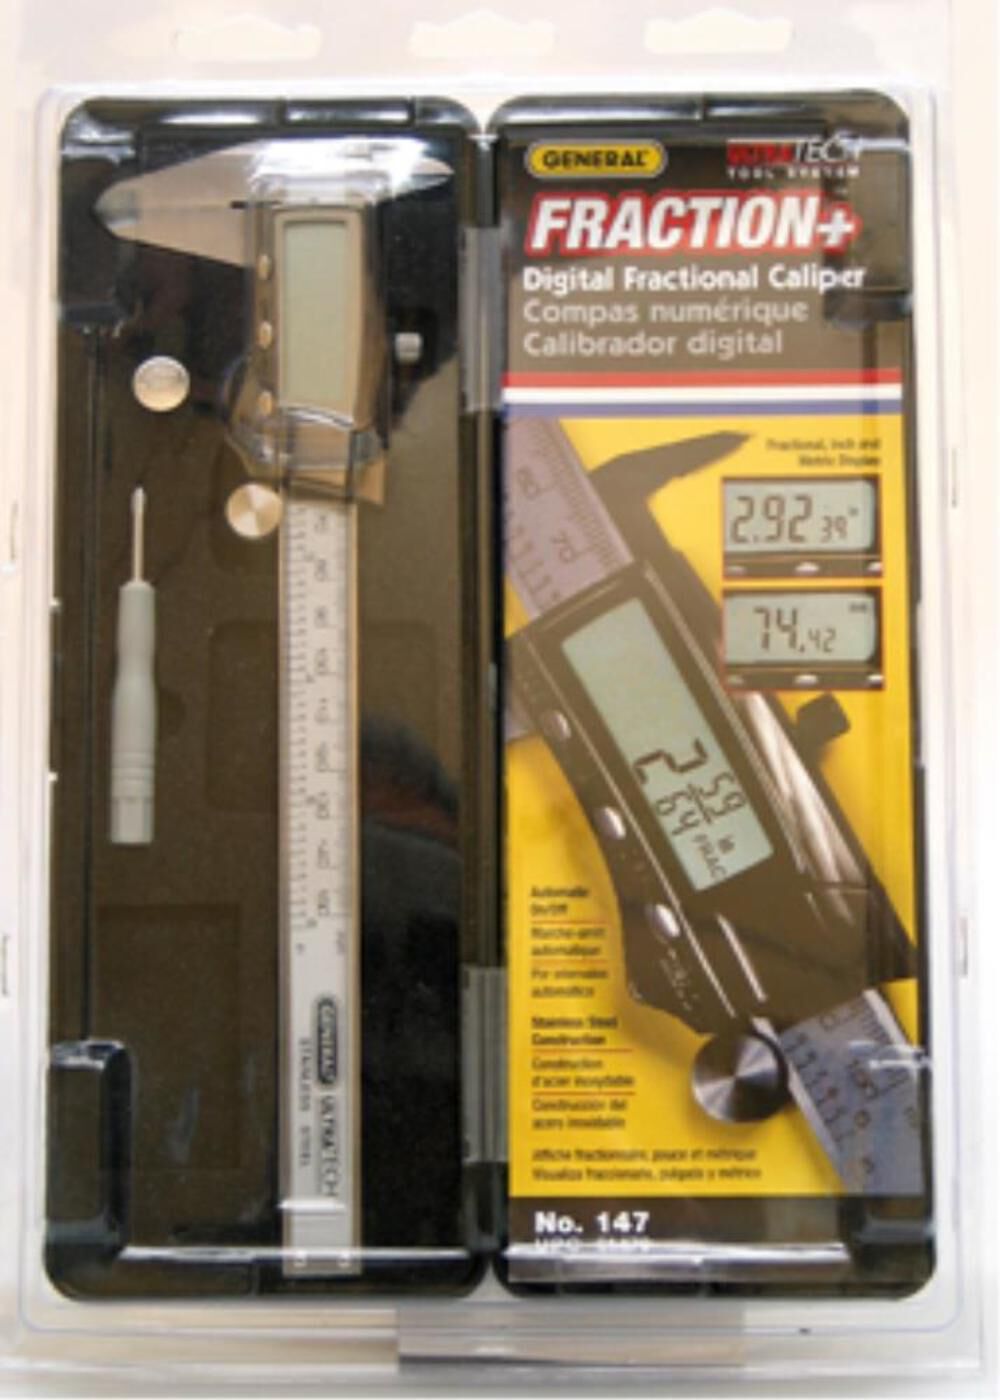 General Tools Fraction+ 3 Mode Digital Caliper 147 - Acme Tools